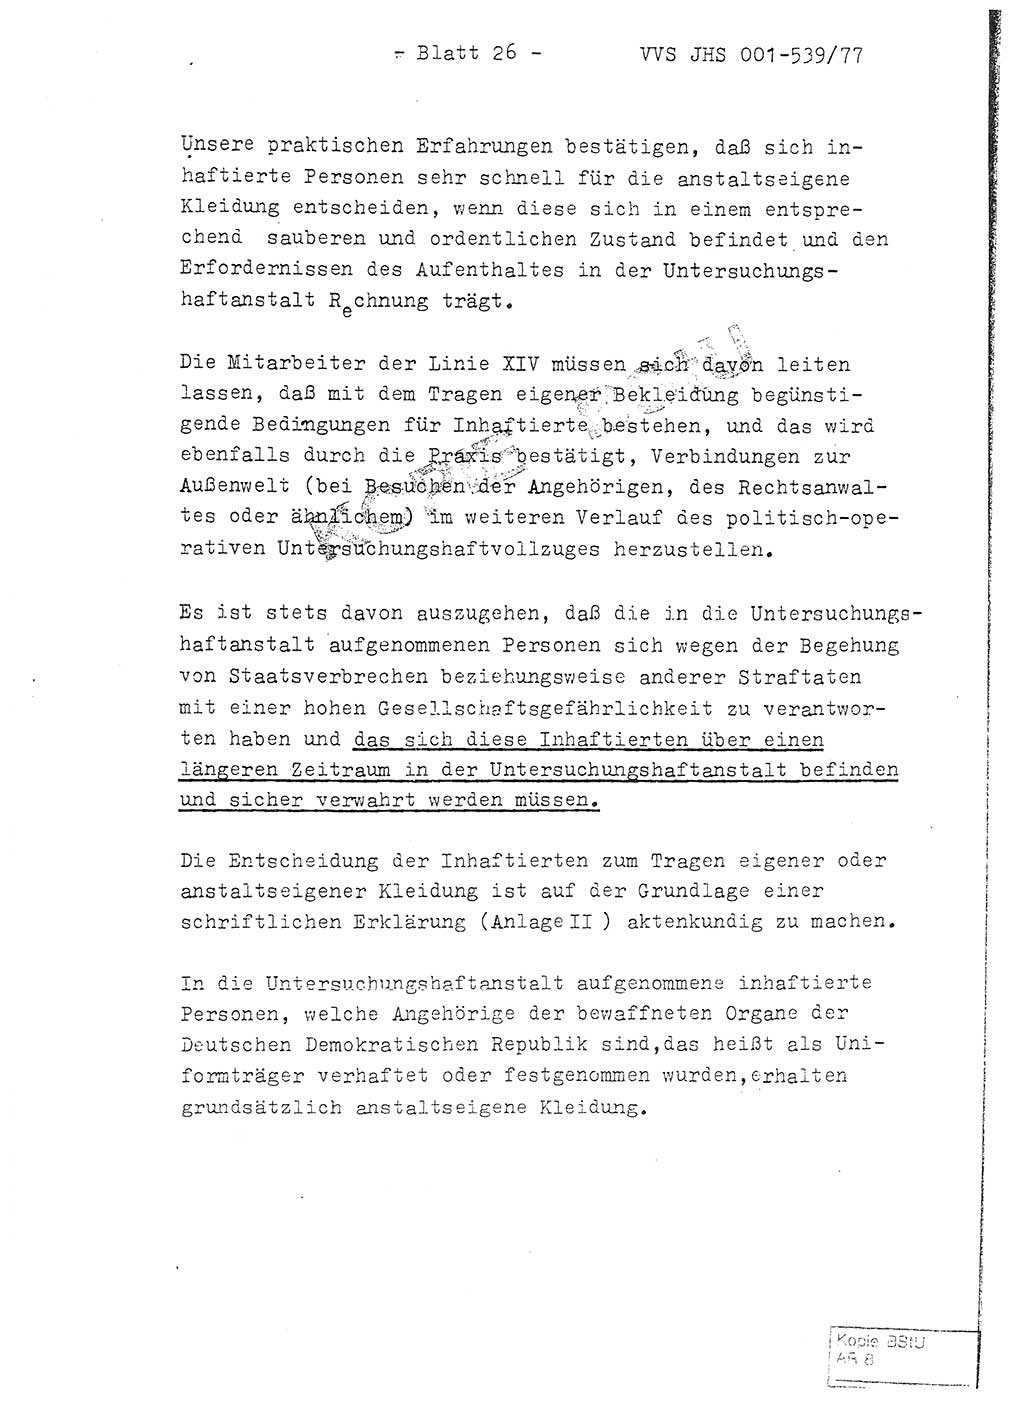 Fachschulabschlußarbeit Hauptmann Dietrich Jung (Abt. ⅩⅣ), Leutnant Klaus Klötzner (Abt. ⅩⅣ), Ministerium für Staatssicherheit (MfS) [Deutsche Demokratische Republik (DDR)], Juristische Hochschule (JHS), Vertrauliche Verschlußsache (VVS) 001-539/77, Potsdam 1978, Seite 26 (FS-Abschl.-Arb. MfS DDR JHS VVS 001-539/77 1978, S. 26)